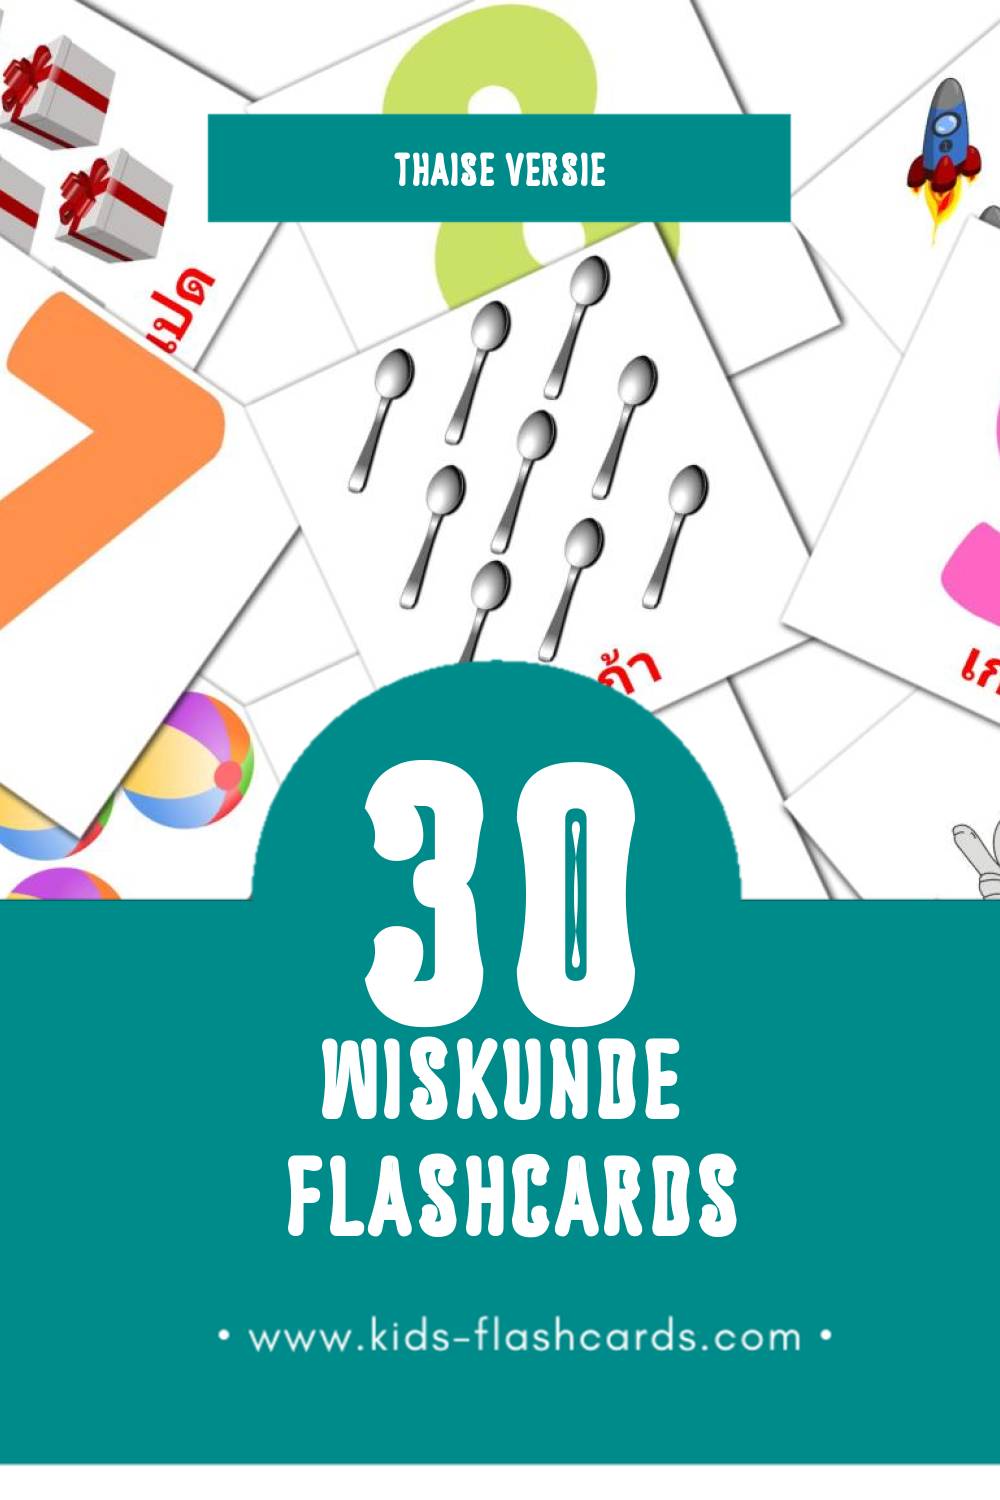 Visuele คณิตศาสตร์ Flashcards voor Kleuters (30 kaarten in het Thais)